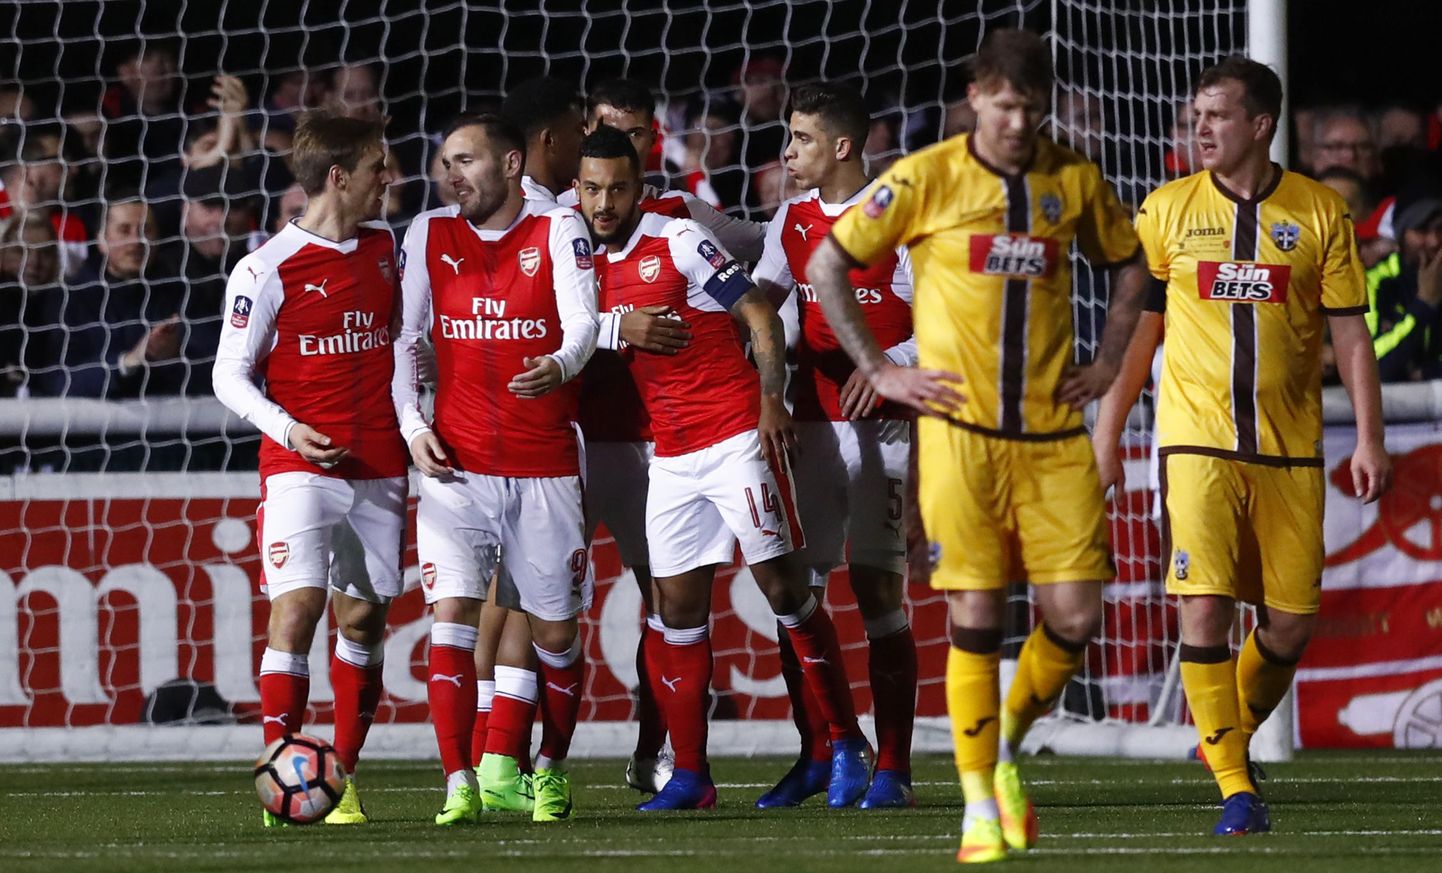 Arsenali mängijad õnnitlevad Theo Walcotti (nr 14, keskel) värava puhul.